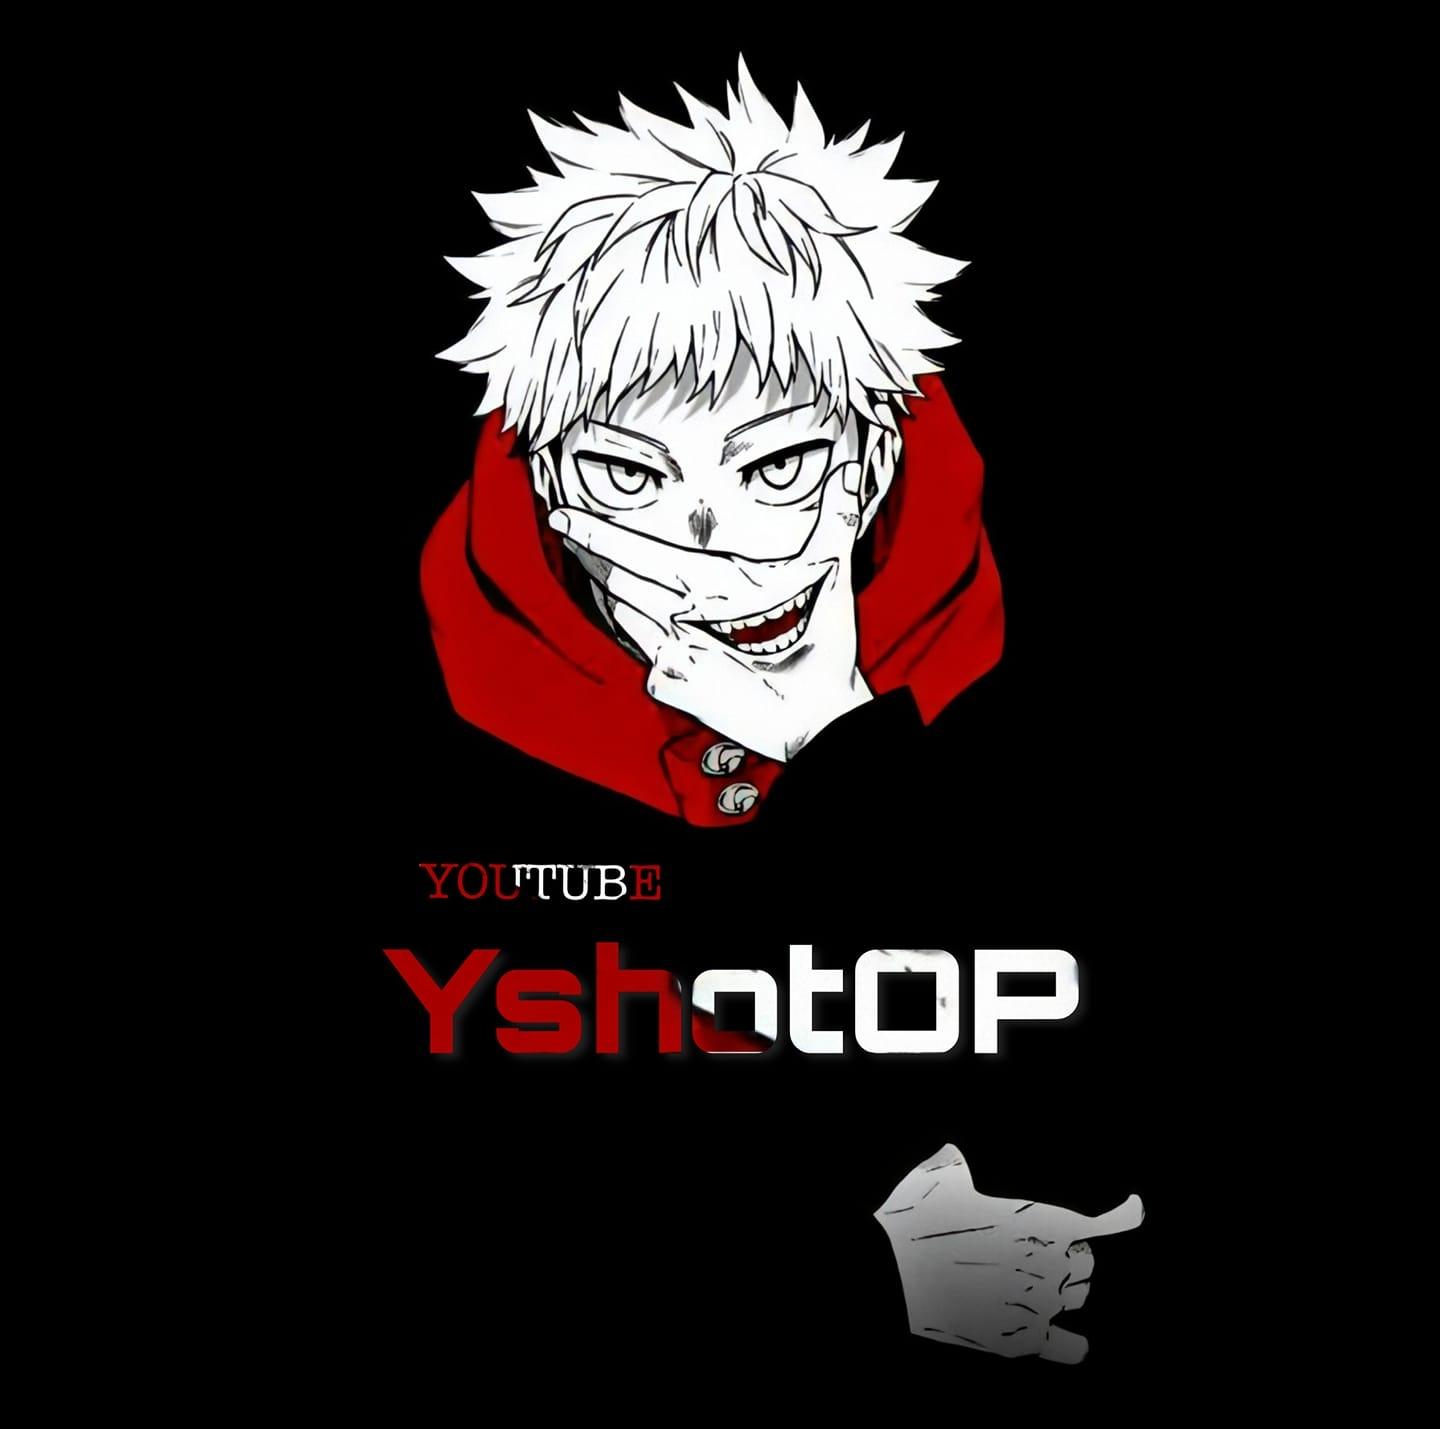 Yshotop Gaming